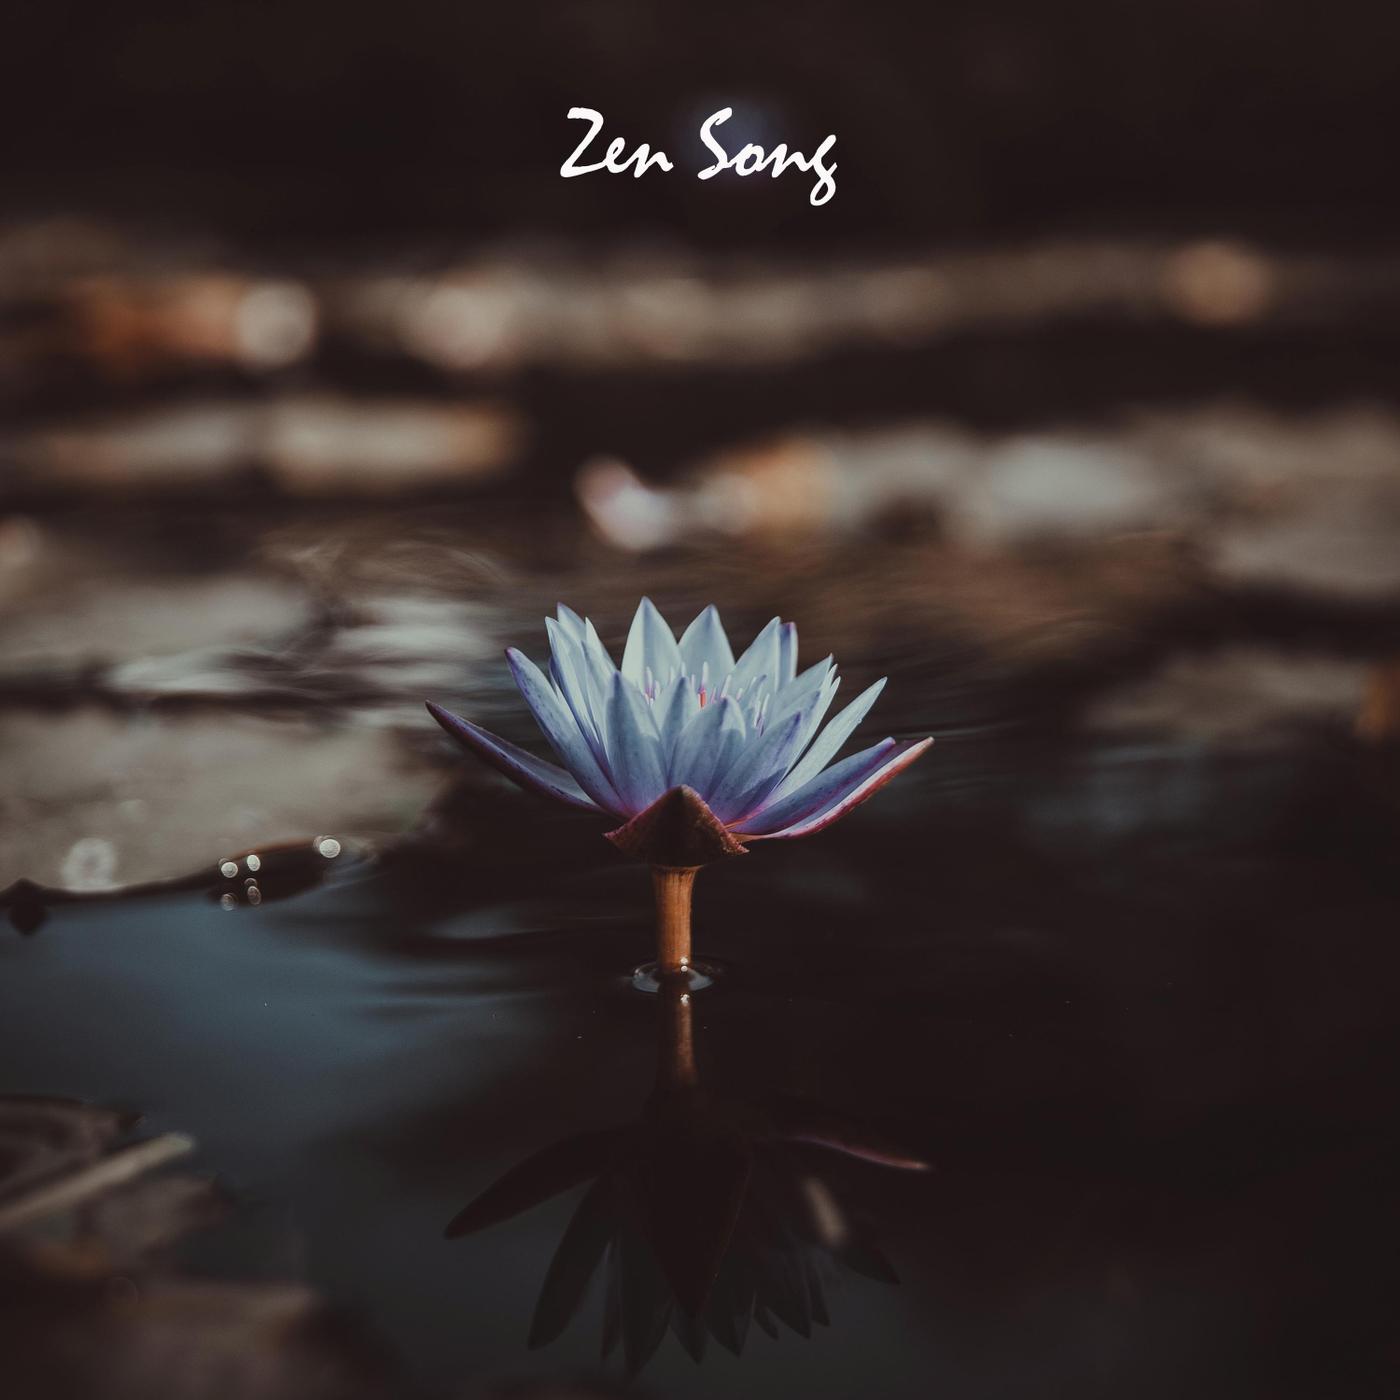 Zen Song